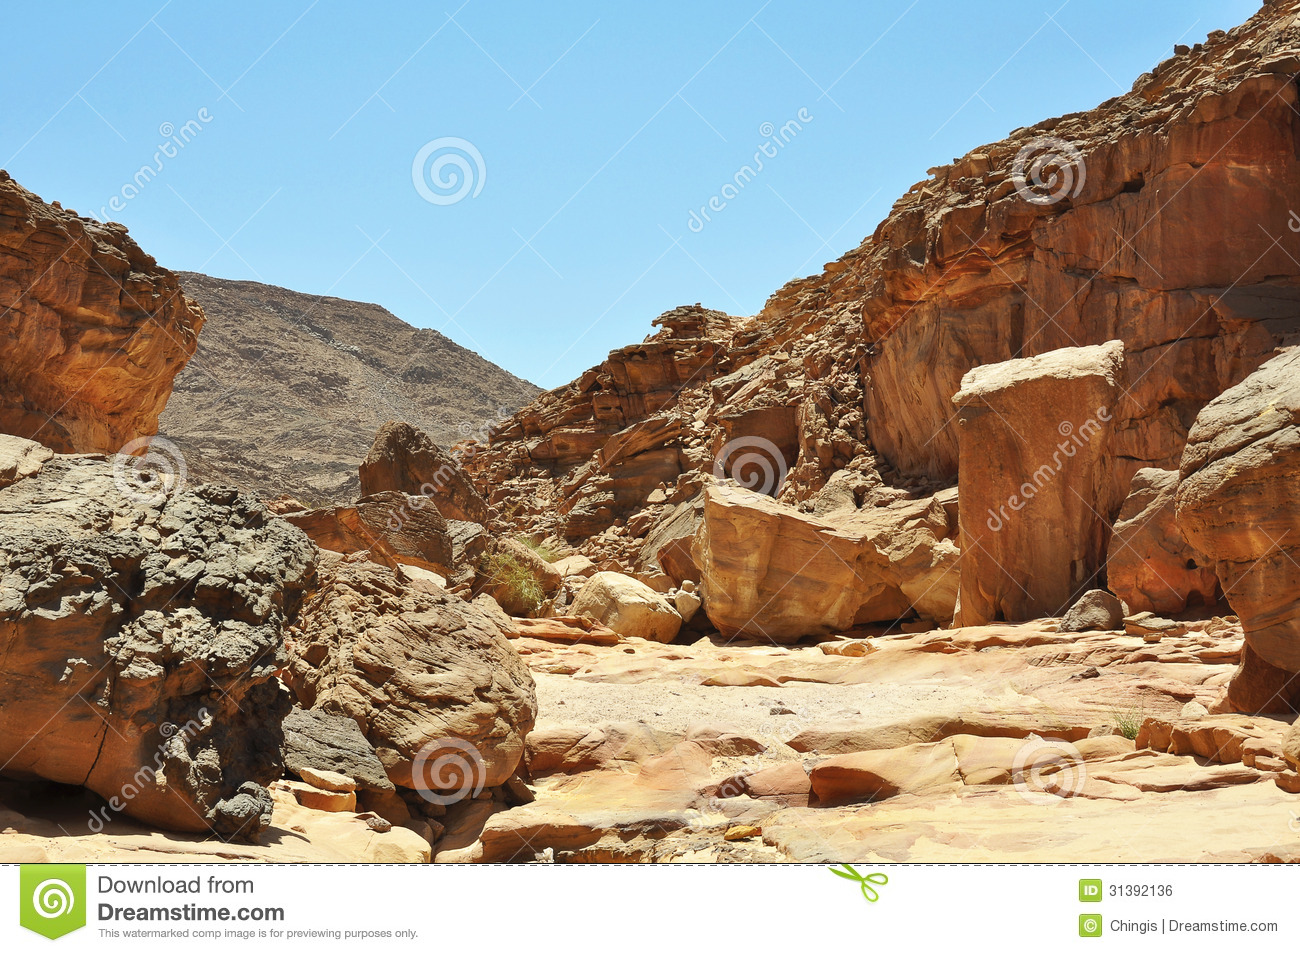 Egypt The Mountains Of The Sinai Desert Royalty Free Stock Image